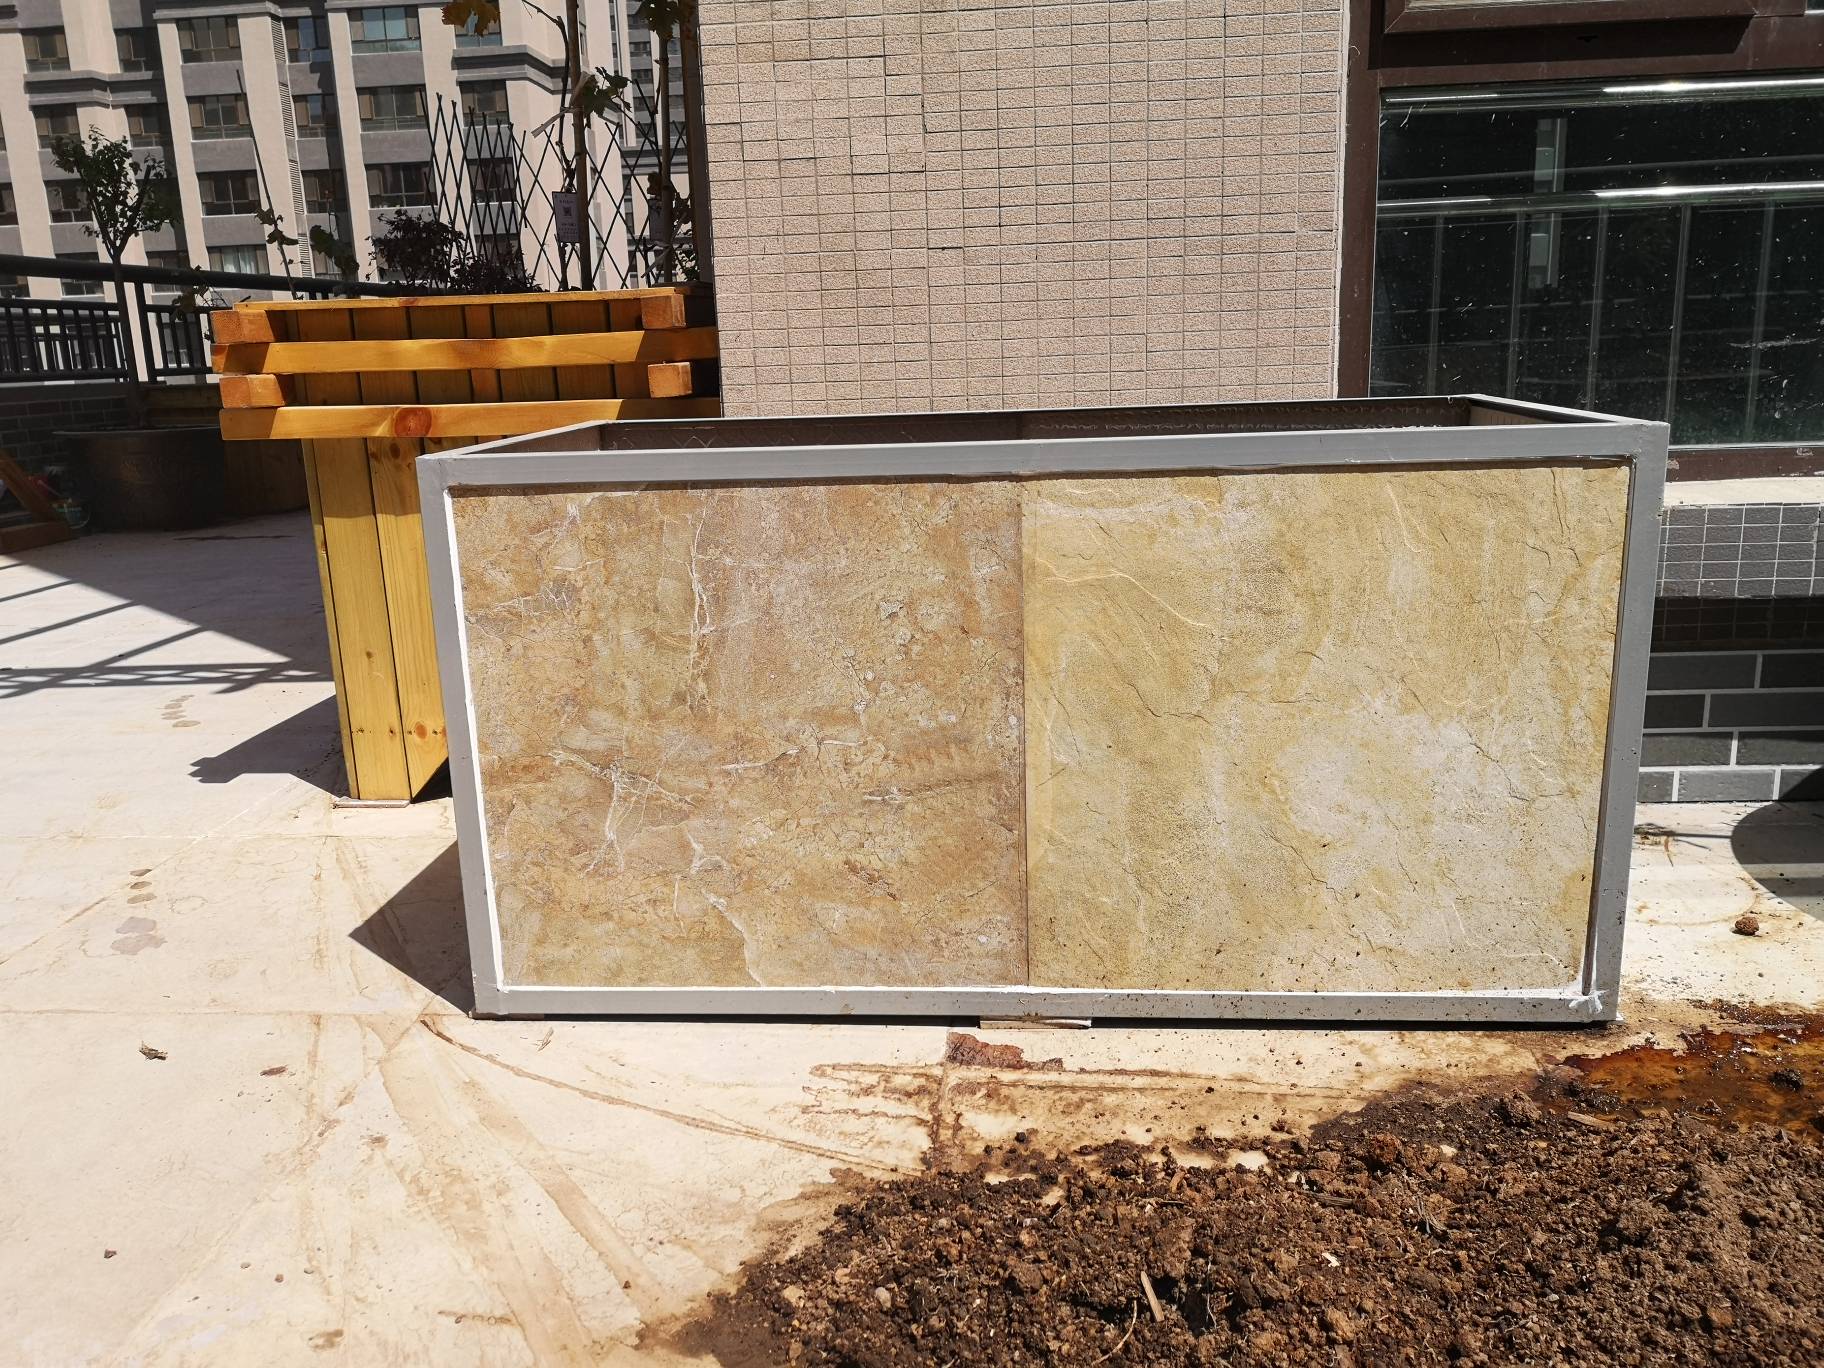 【果乔花园】露台升级改造更新中……瓷砖种植箱制作完成!